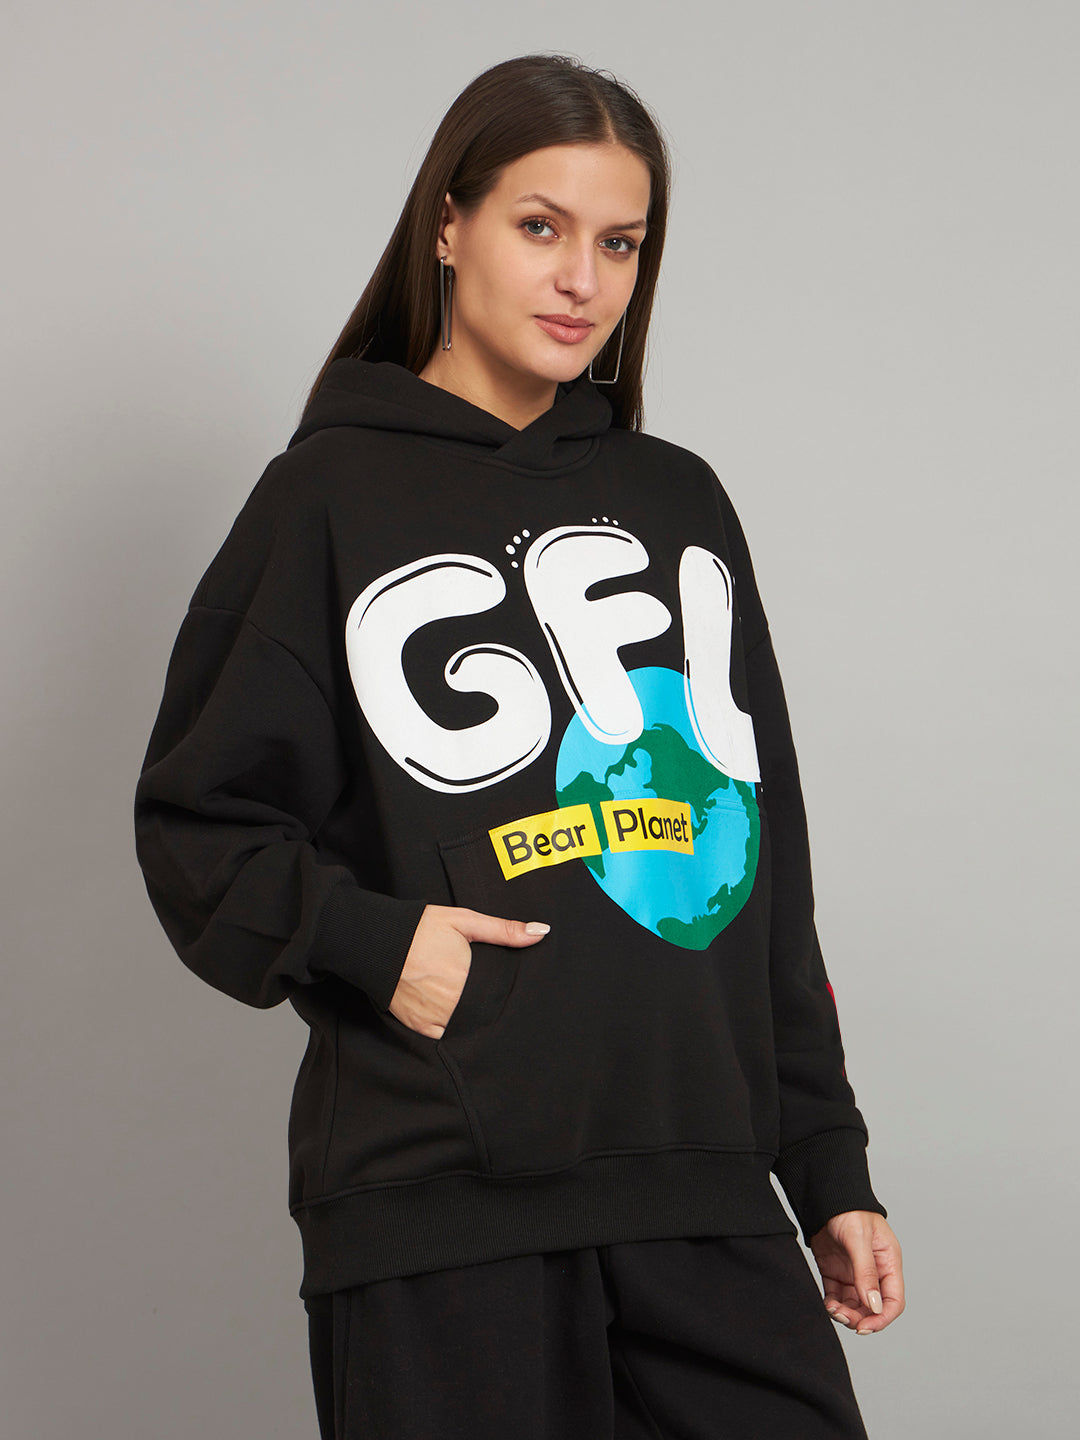 Griffel Women's Black GFL Bear Planet print Oversized Fleece Hoodie Sweatshirt - griffel